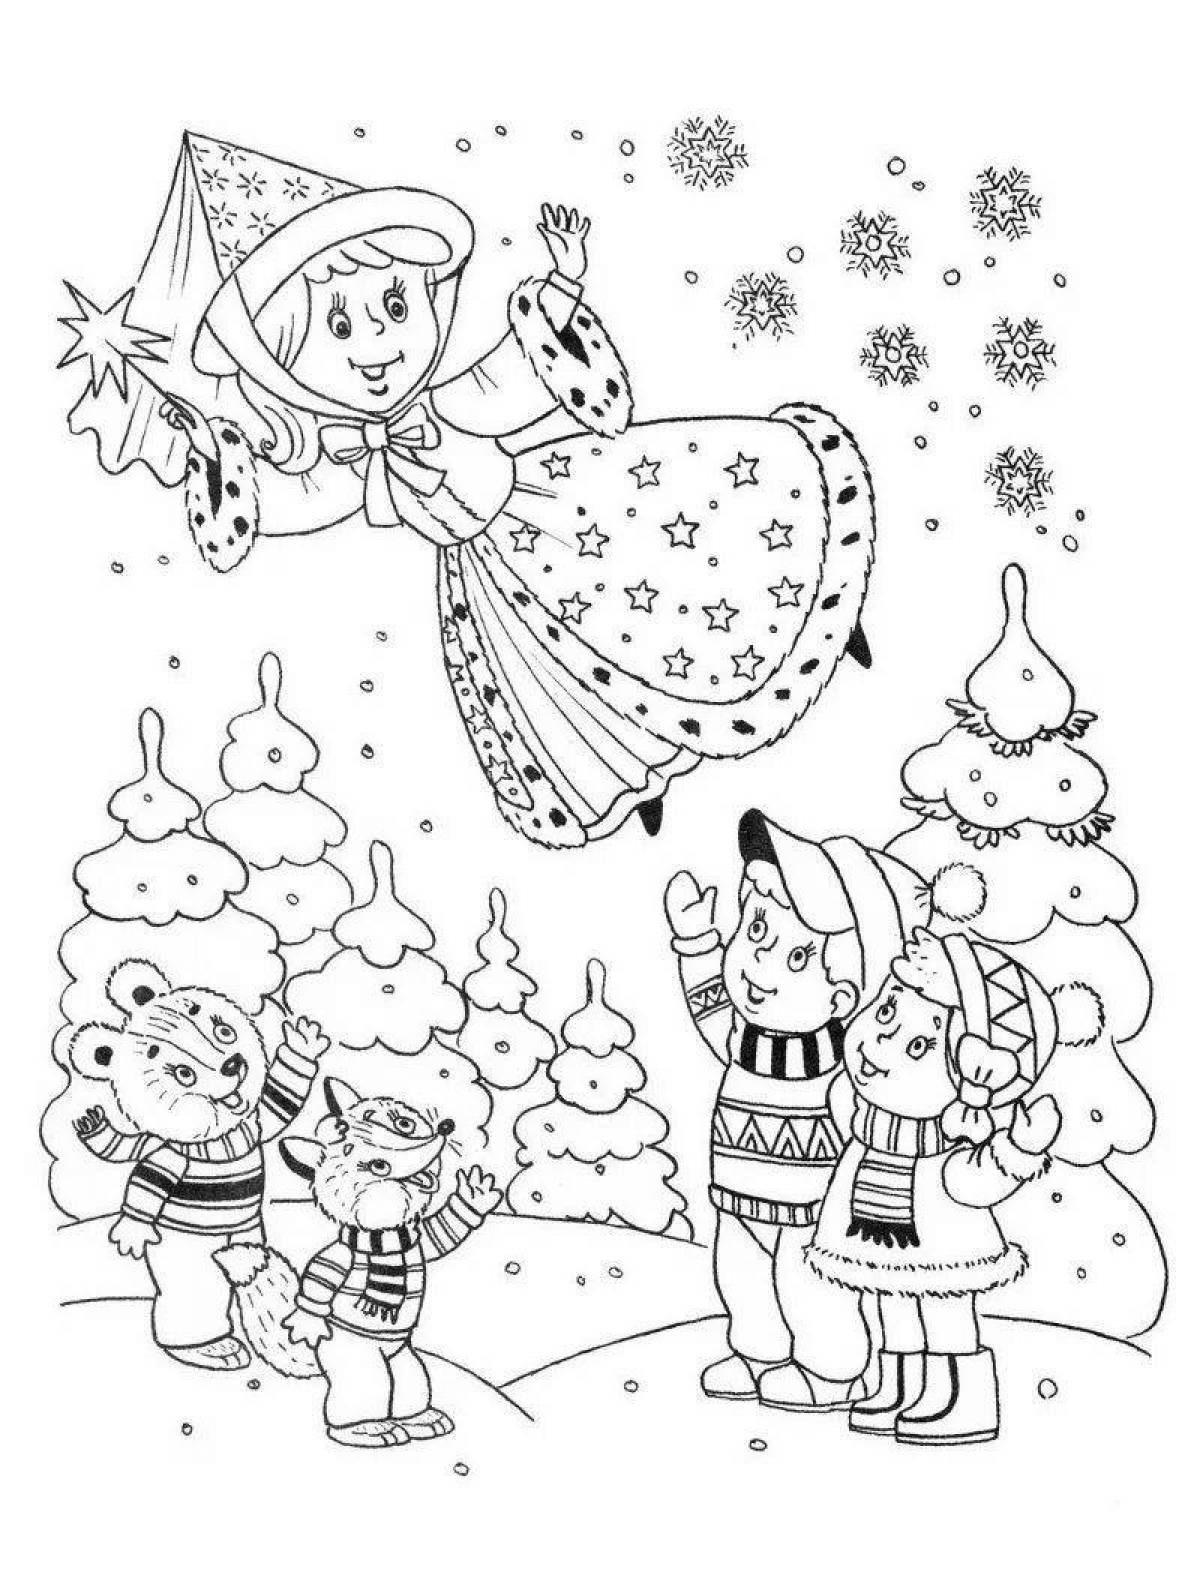 Sledding winter coloring for schoolchildren